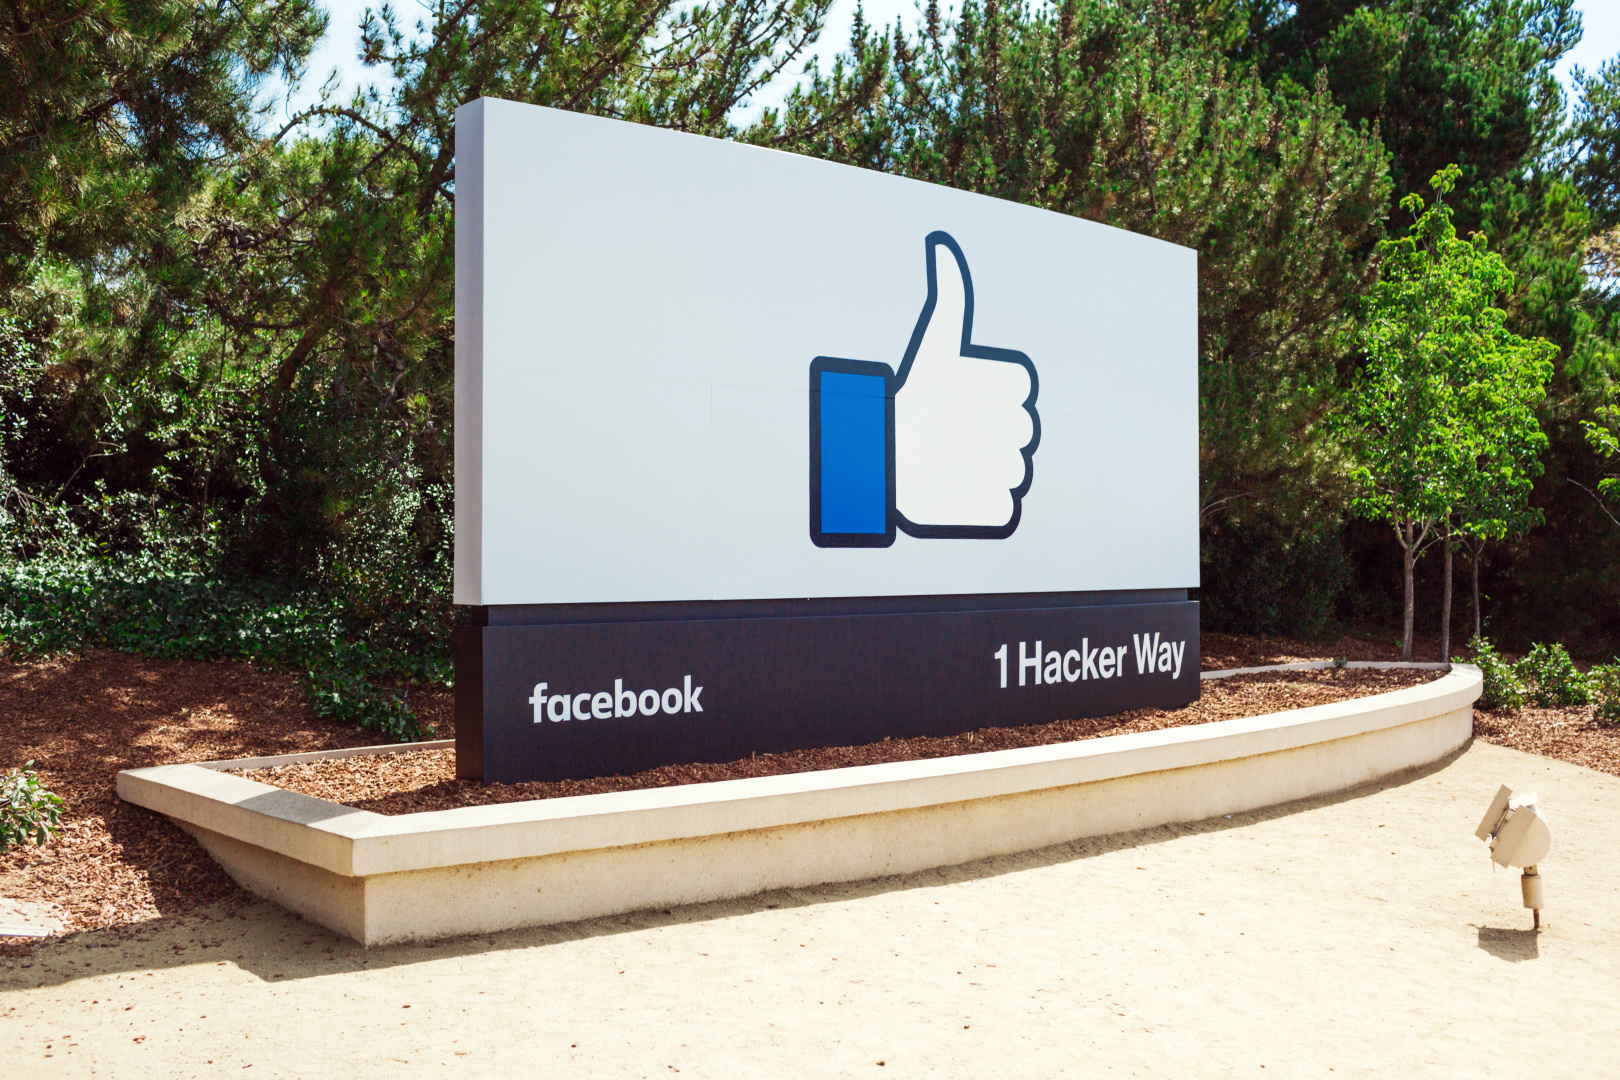 Facebook tjente 27 milliarder dollar i fjor, og hadde 1,23 milliarder daglige brukere.